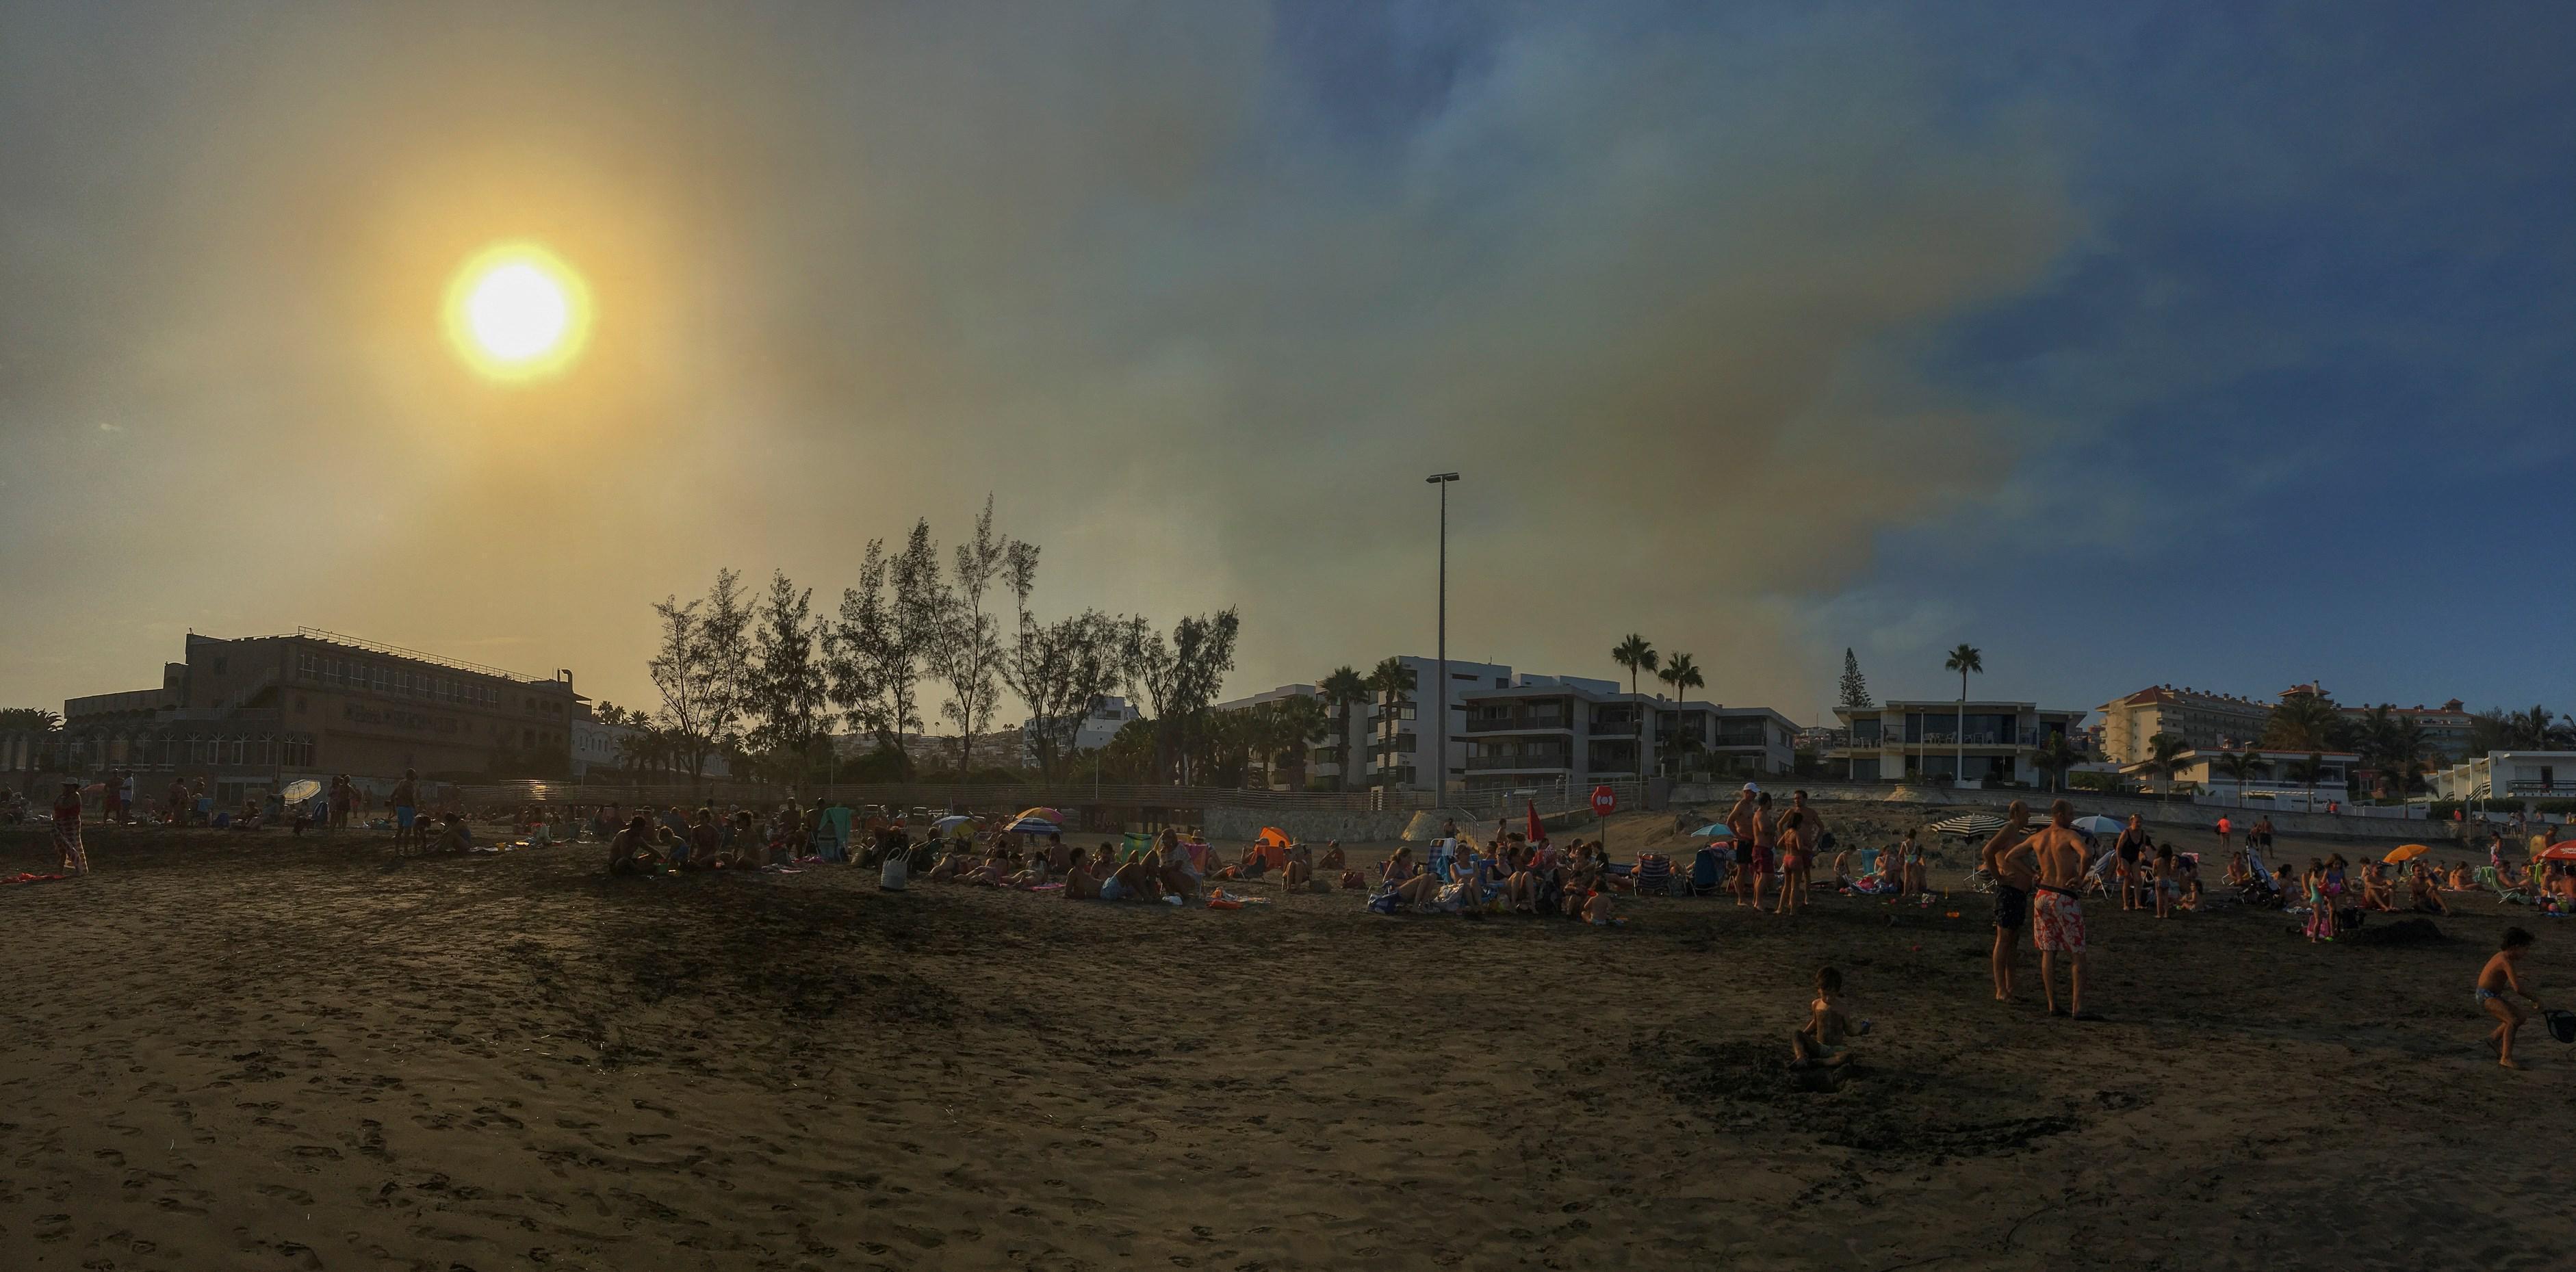 Kanarya Adaları yangınında 9 bin kişi tahliye edildi